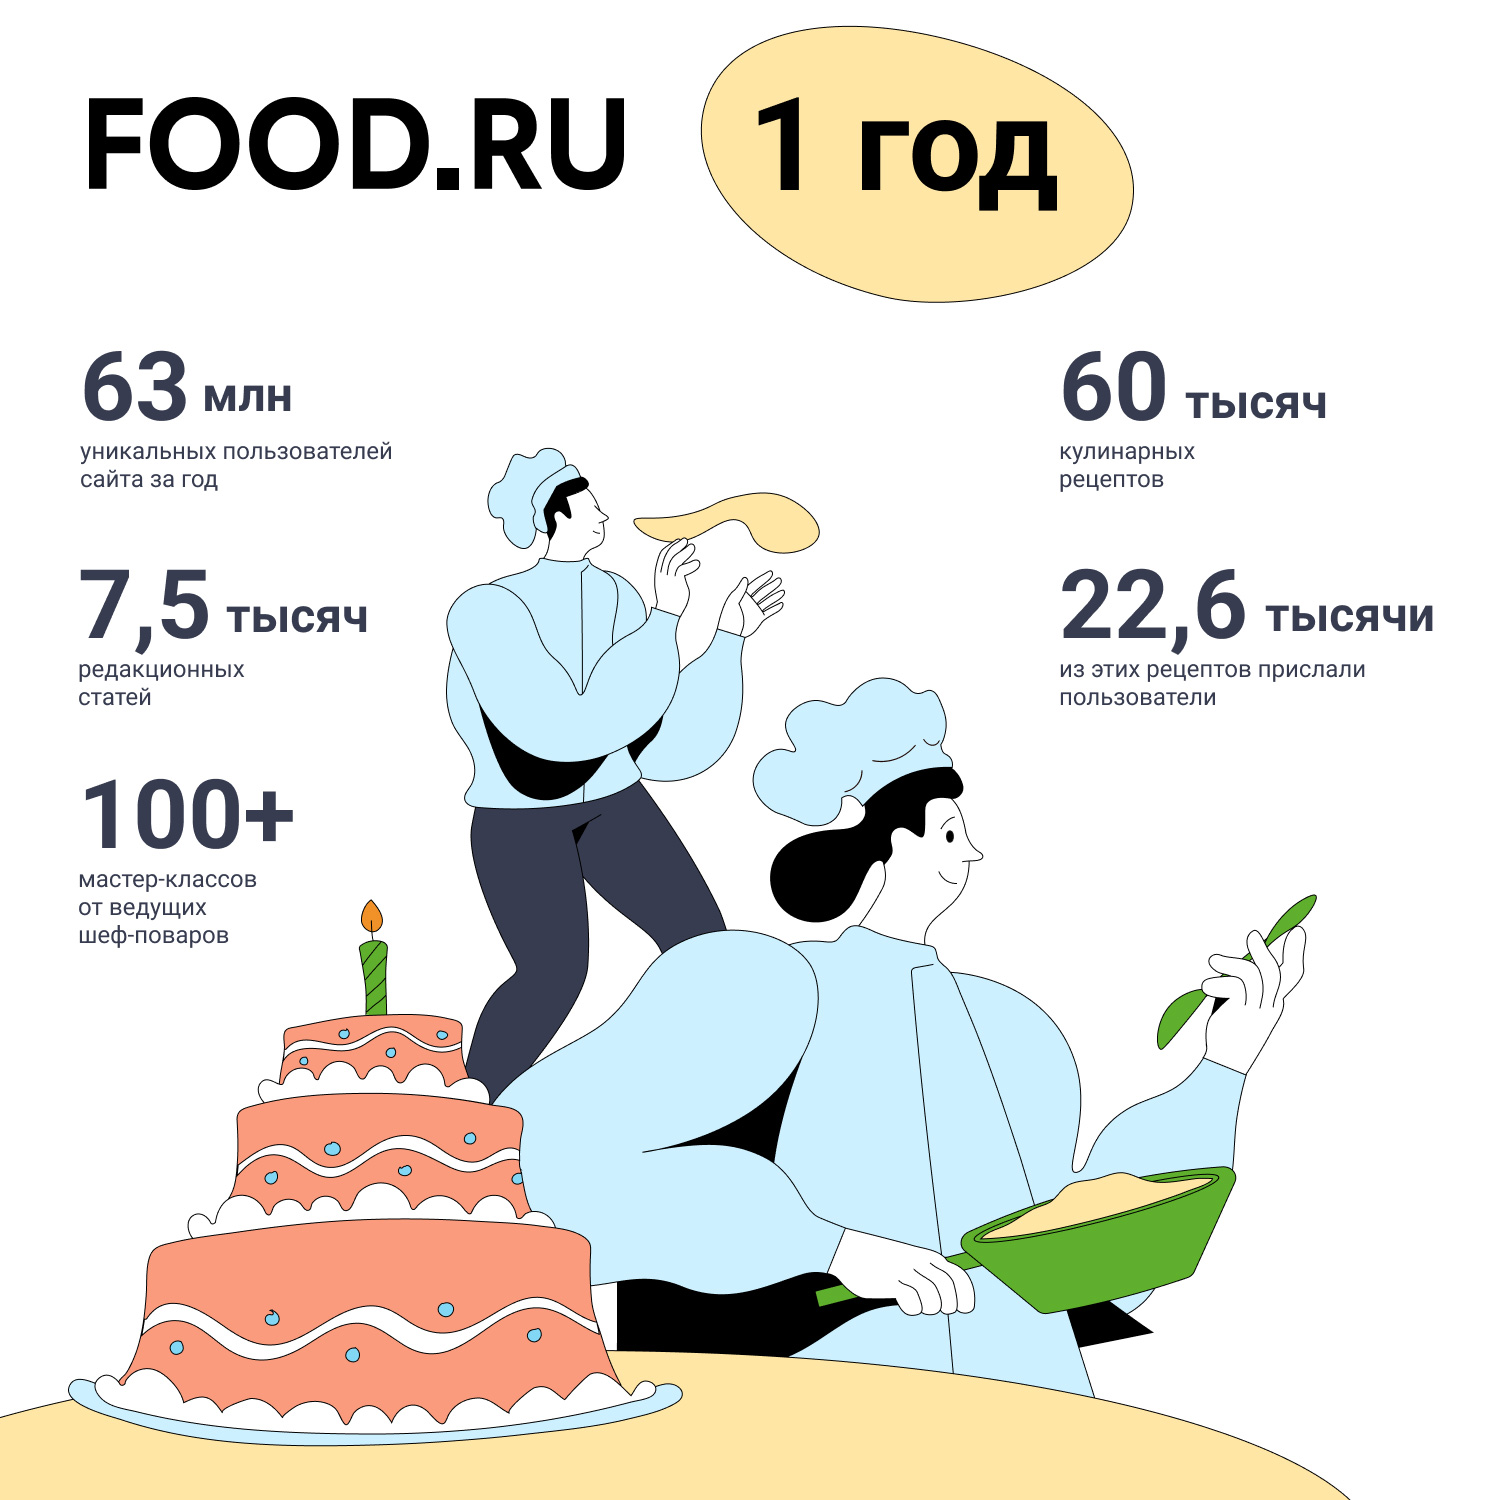 food ru - Медиаплатформа food.ru за год: 60 000 рецептов для 60 миллионов посетителей | Новости компании